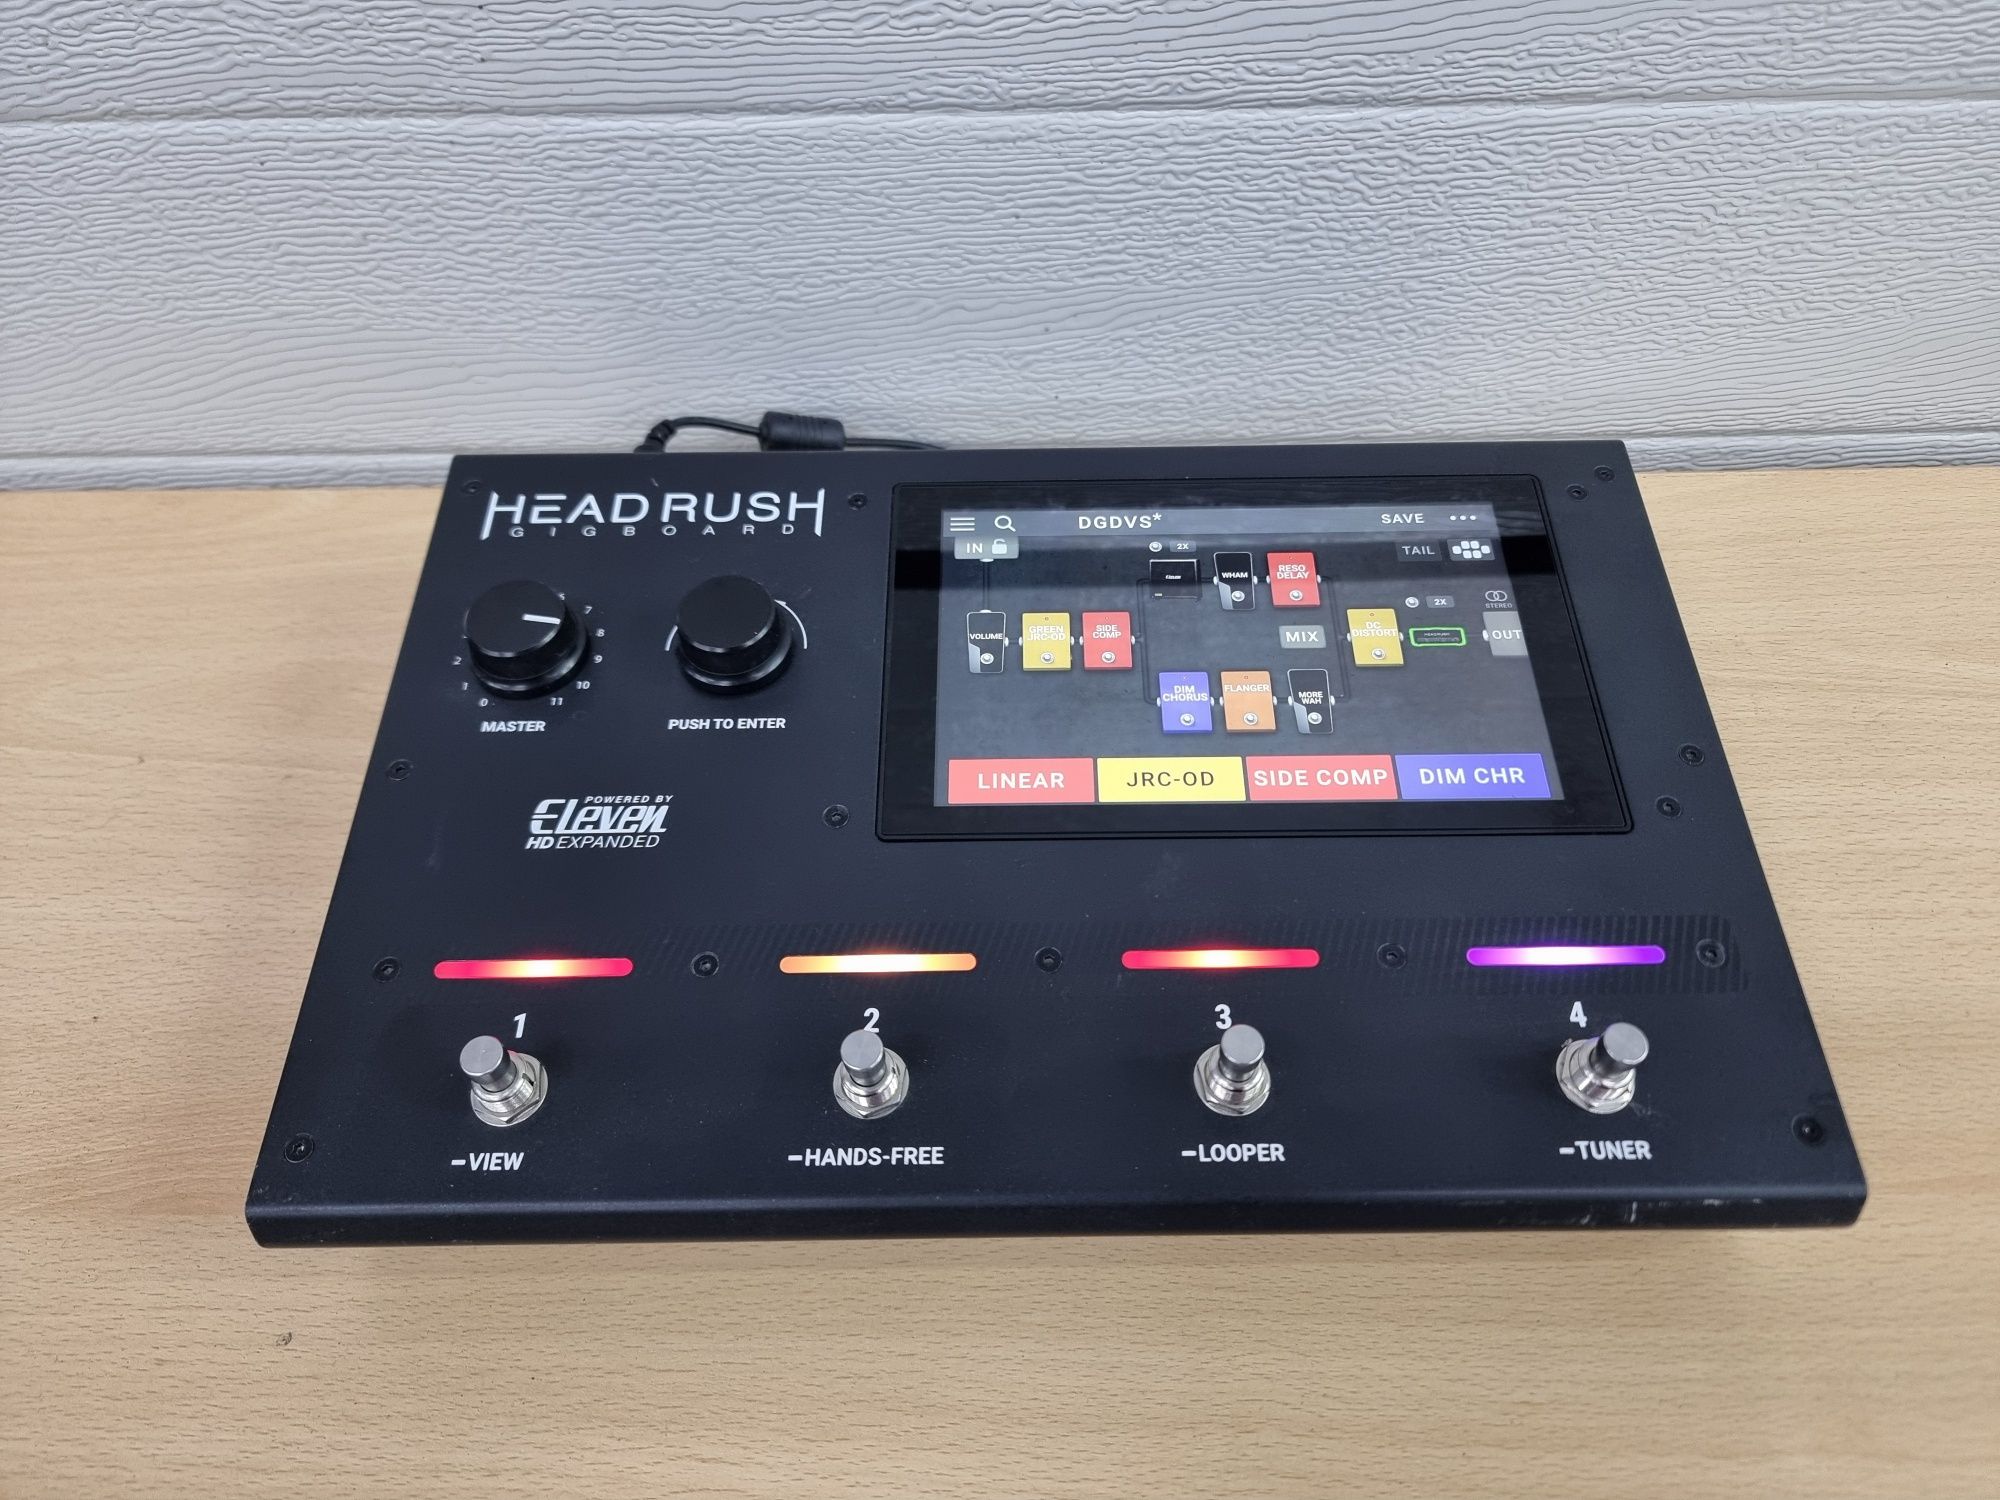 Procesor gitarowy headrush gigaboard okazja najtaniej w sieci